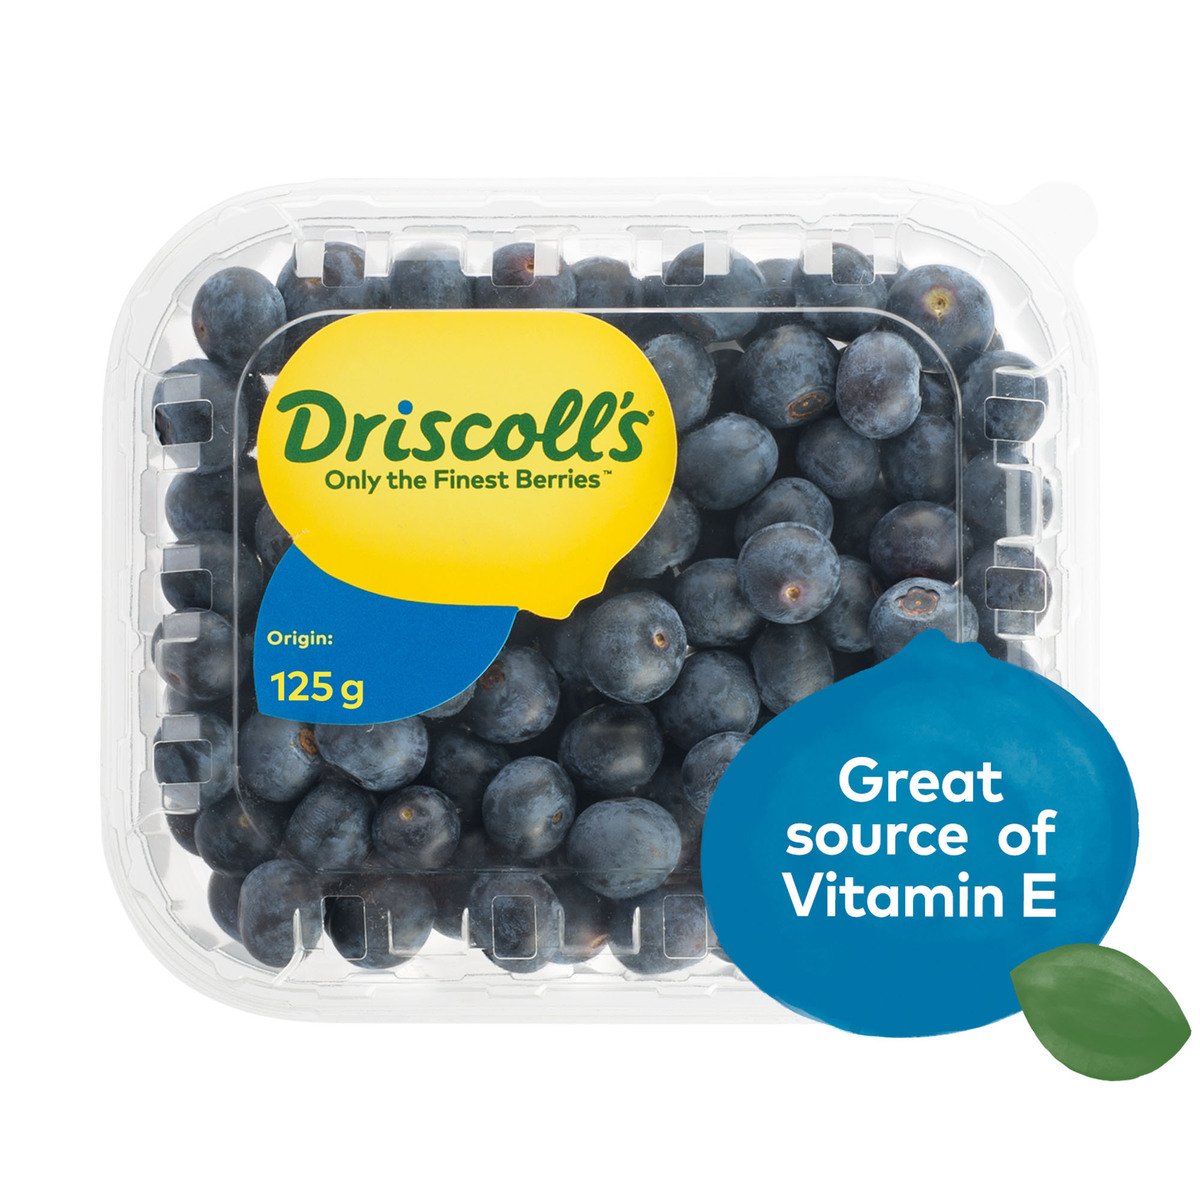 Buy Driscoll's Blueberries, Jumbo Online